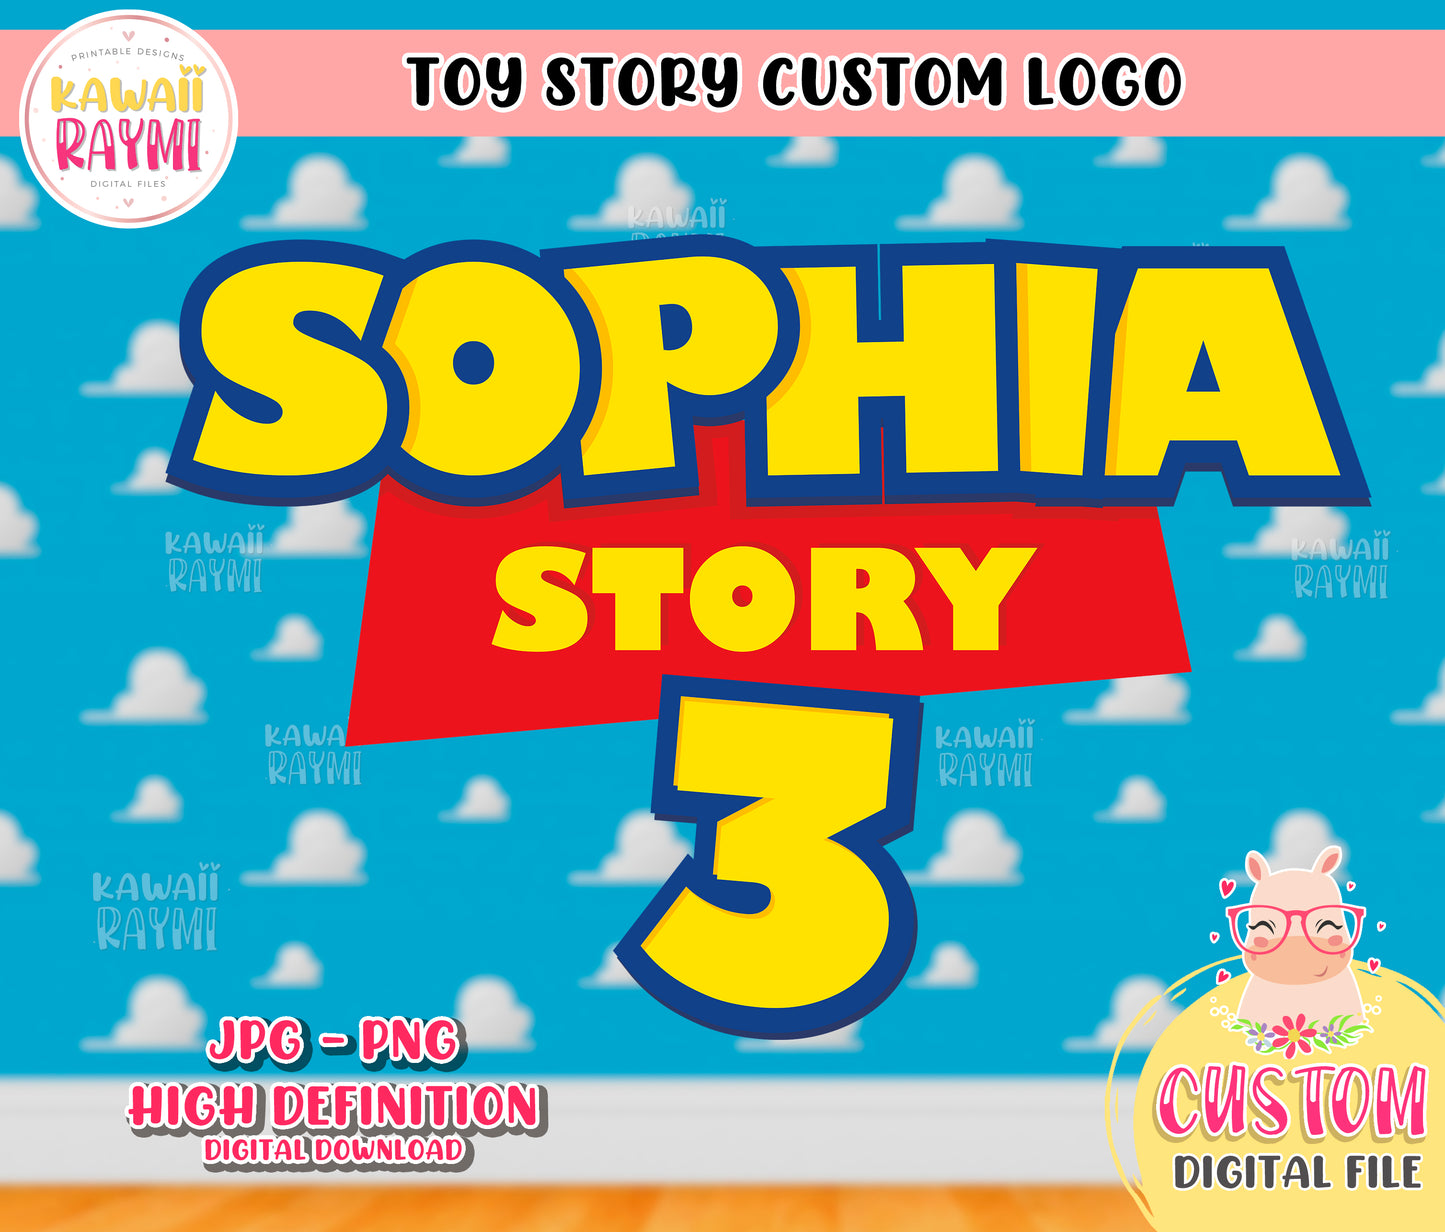 Toy story custom logo, birthday logo toy story